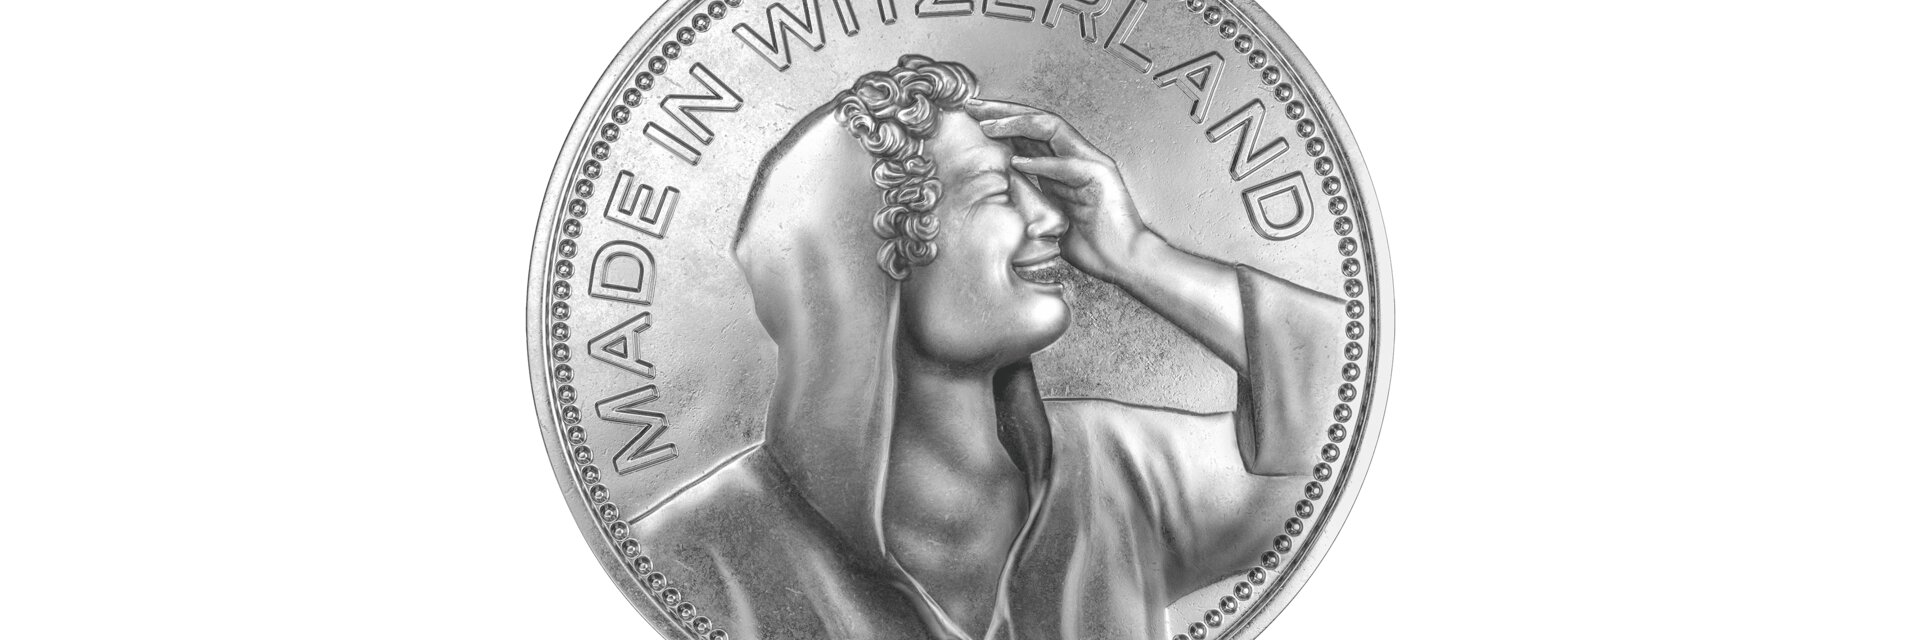 Fünflieber-ähnliche Münze mit einem lachenden Portrait und dem Titel "Made in Witzerland"